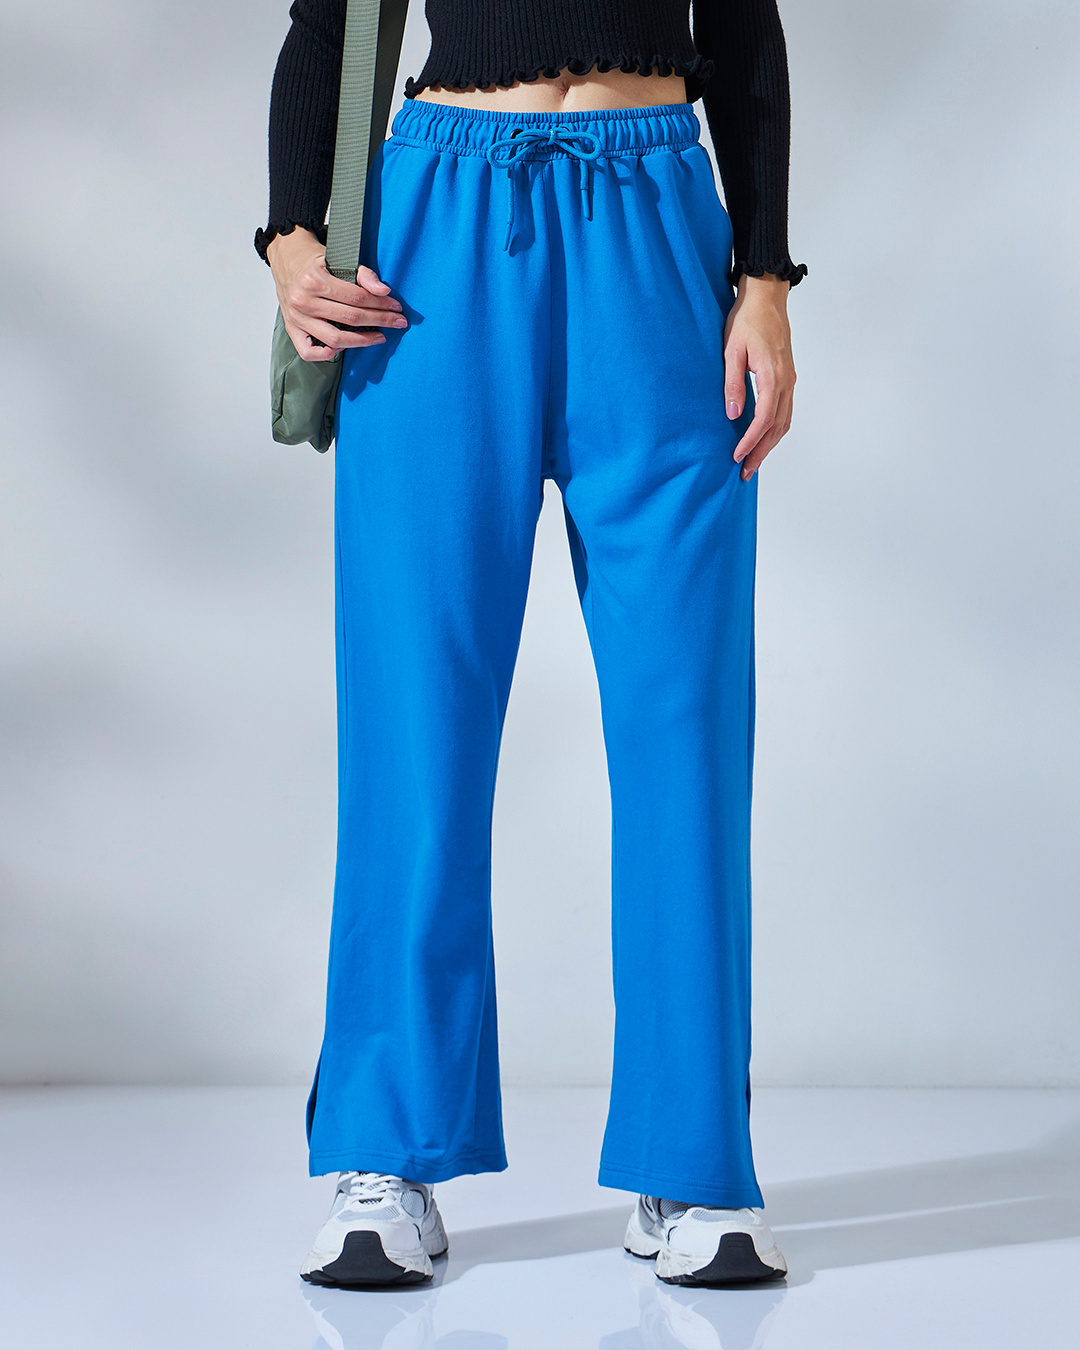 Buy Women's Blue Trackpants Online at Bewakoof